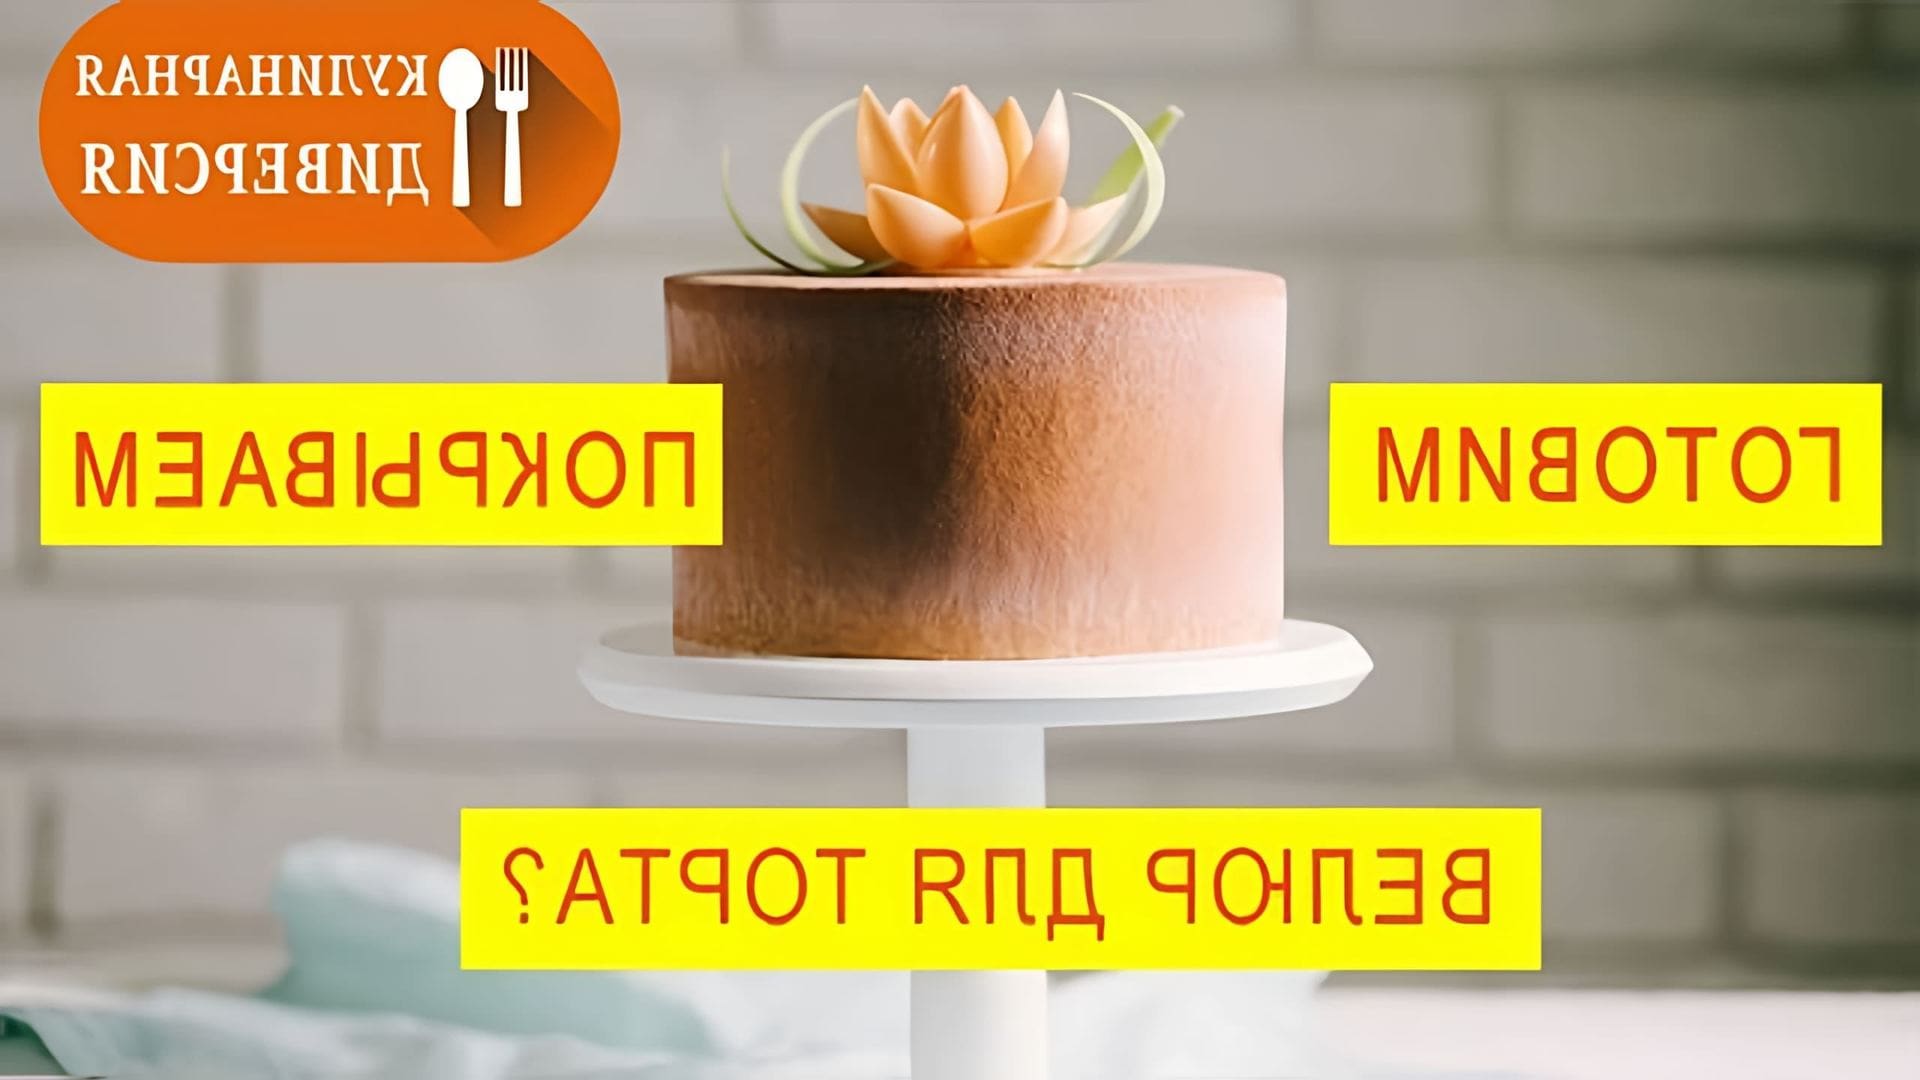 В этом видео мастер-классе демонстрируется процесс покрытия бисквитного торта велюром